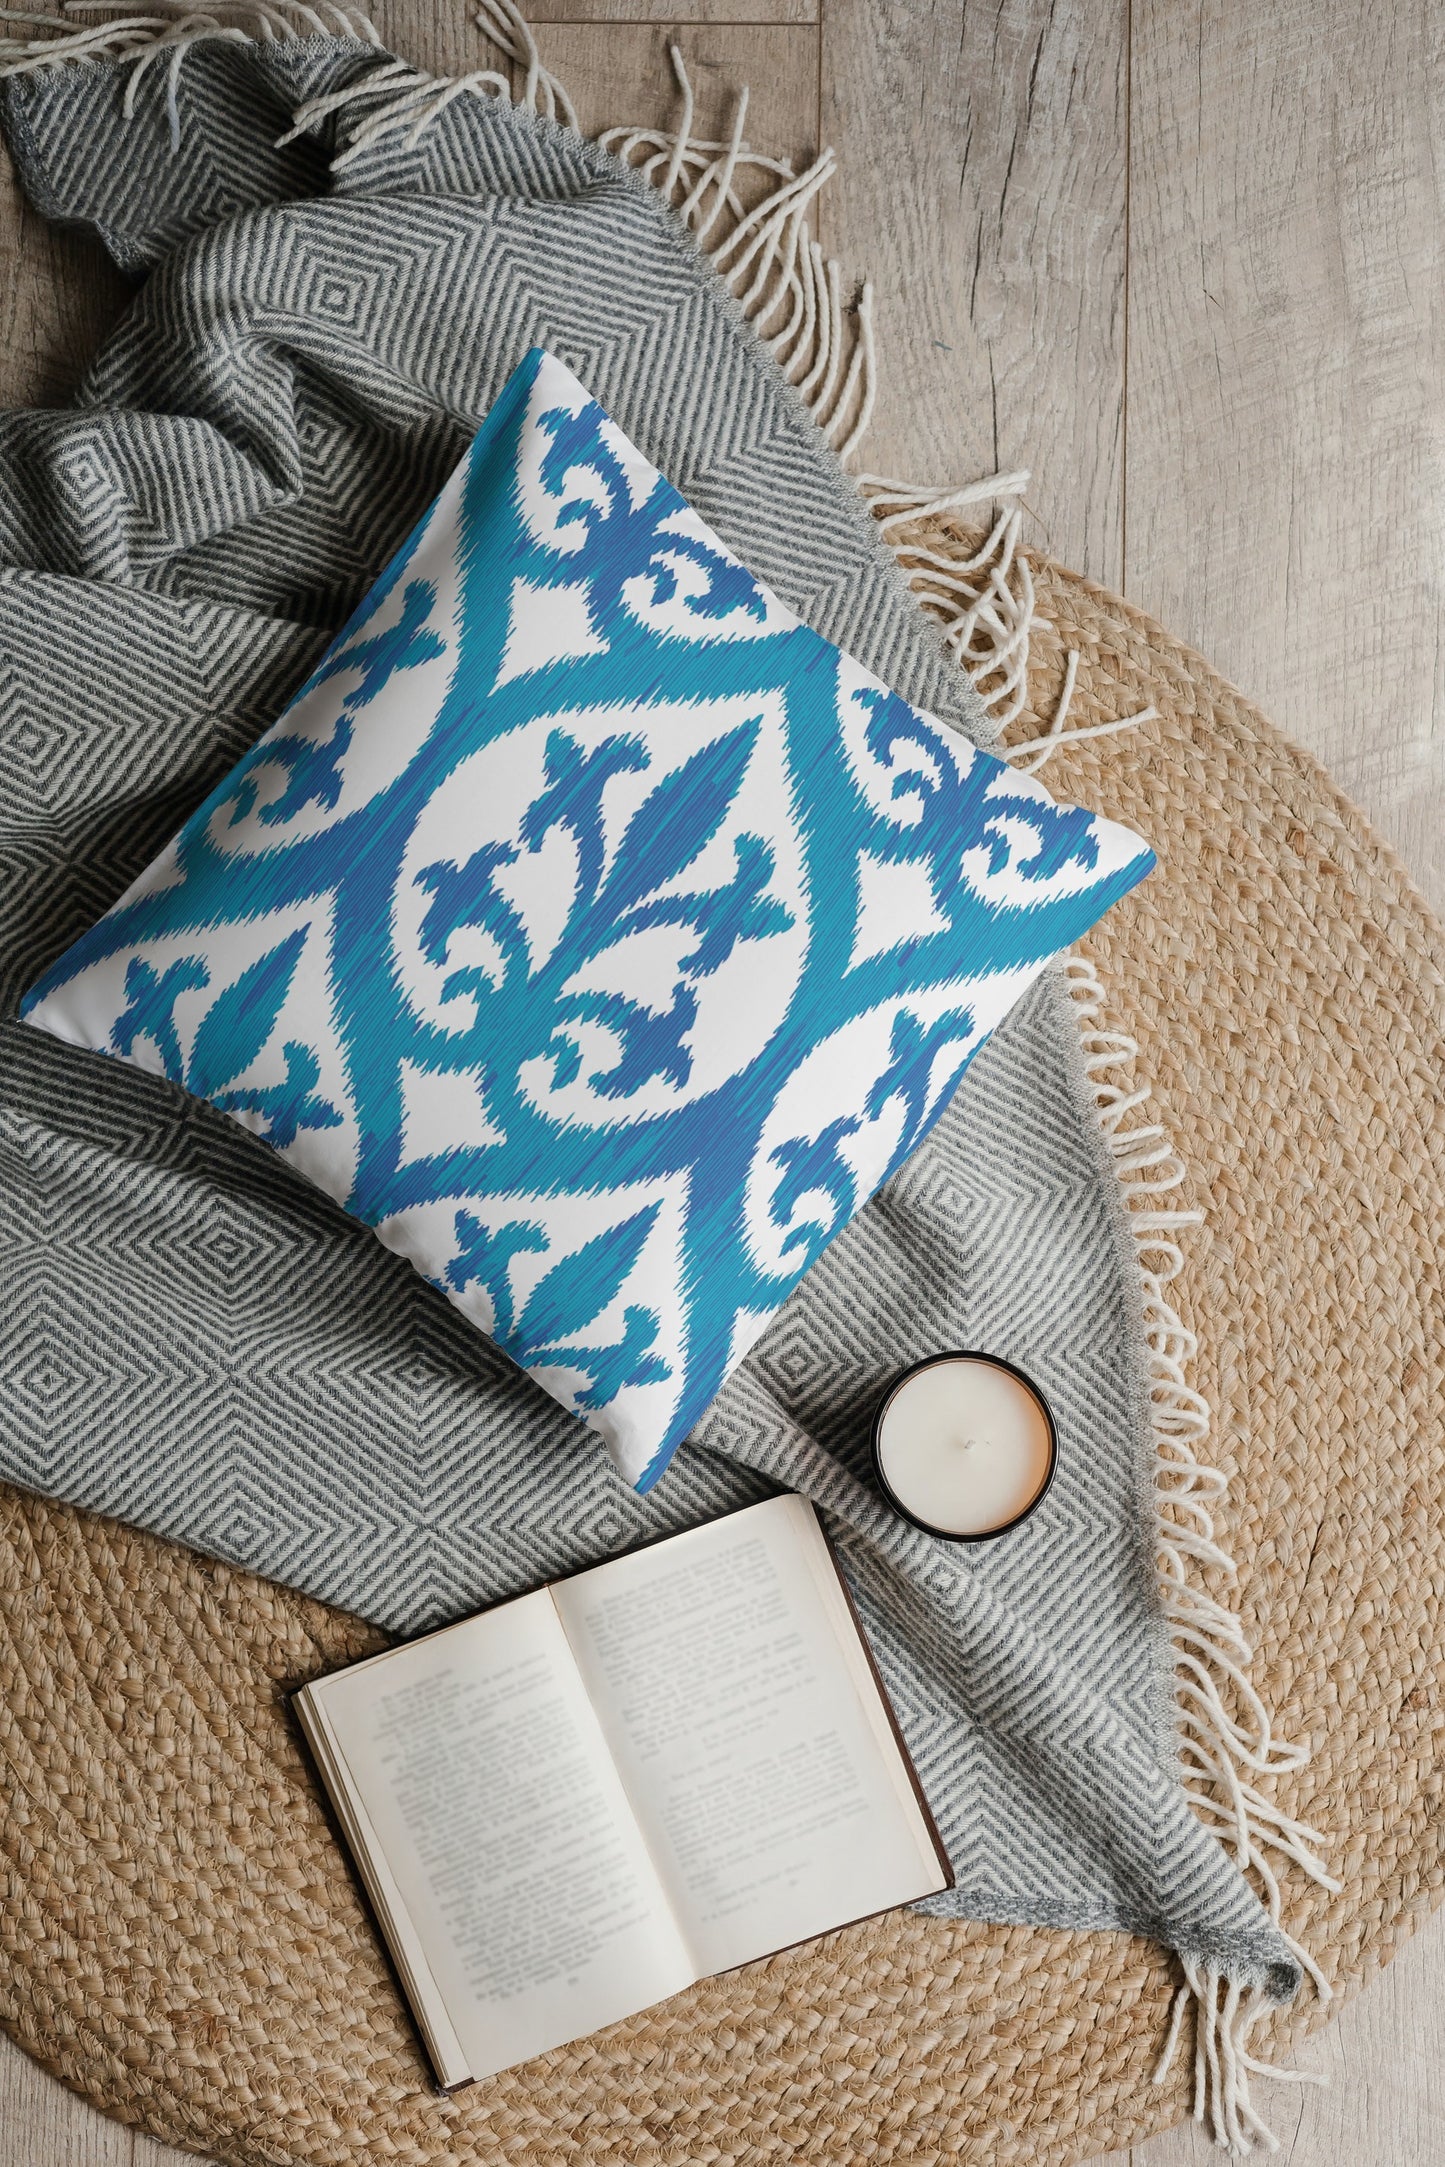 Ikat Outdoor Pillows Ocean Blue & White